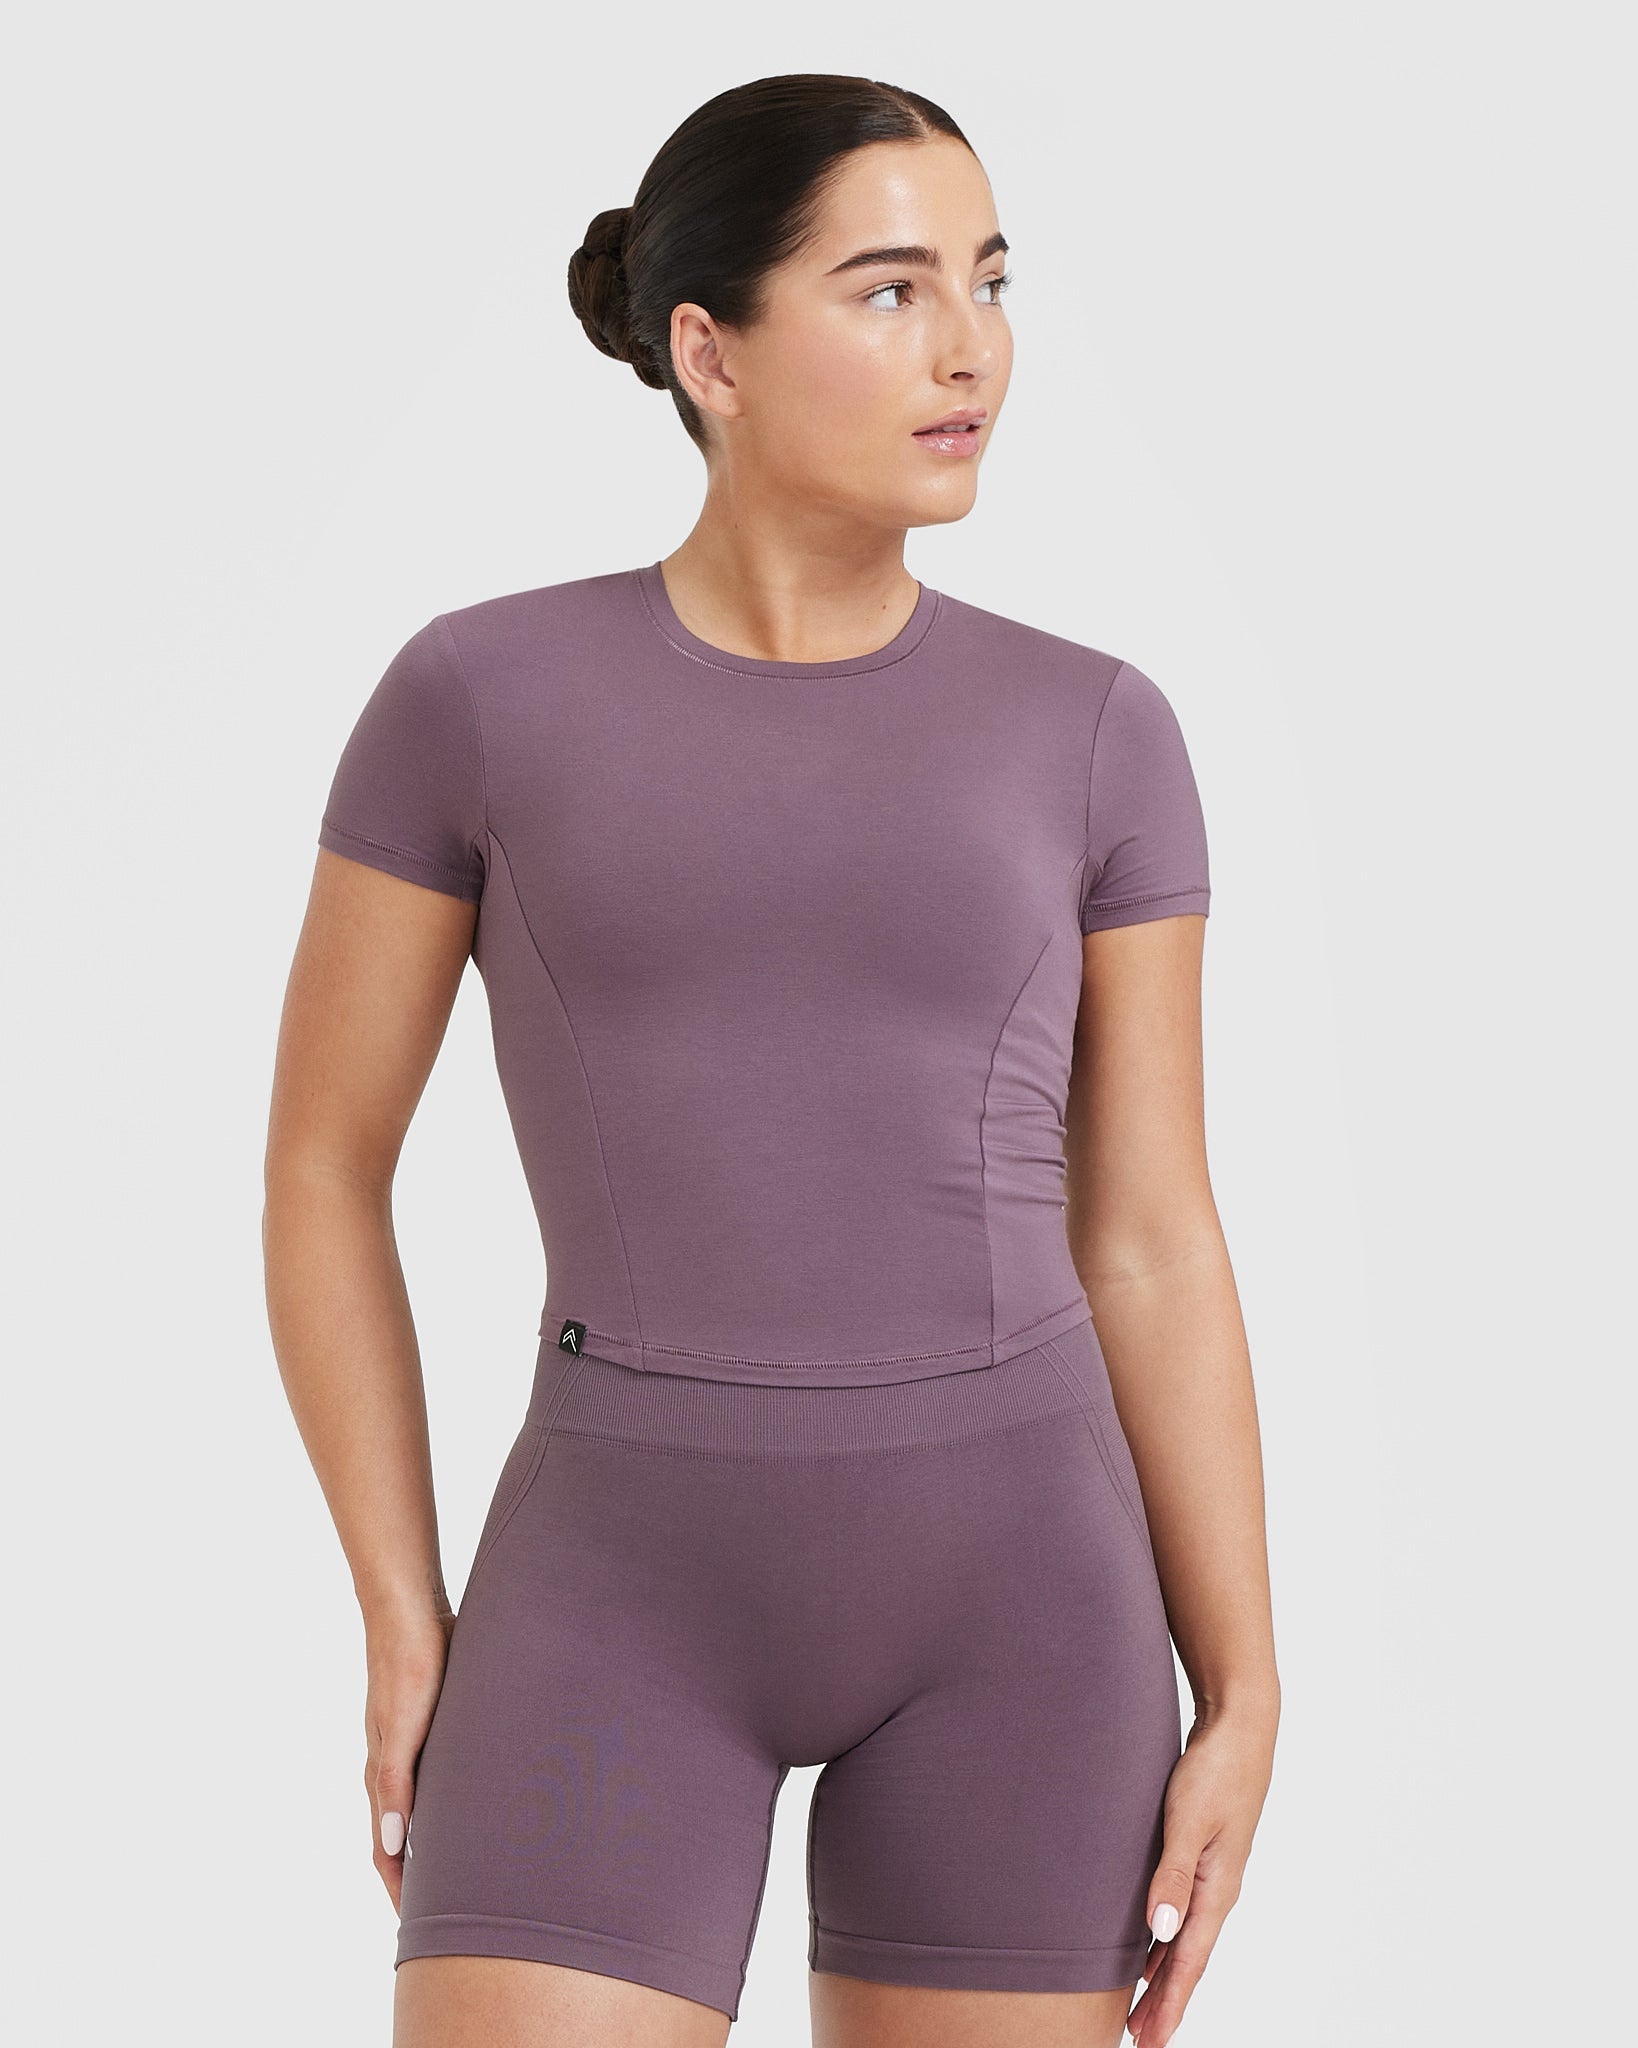 Mid Length Sleeve Tops Women - Vintage Purple